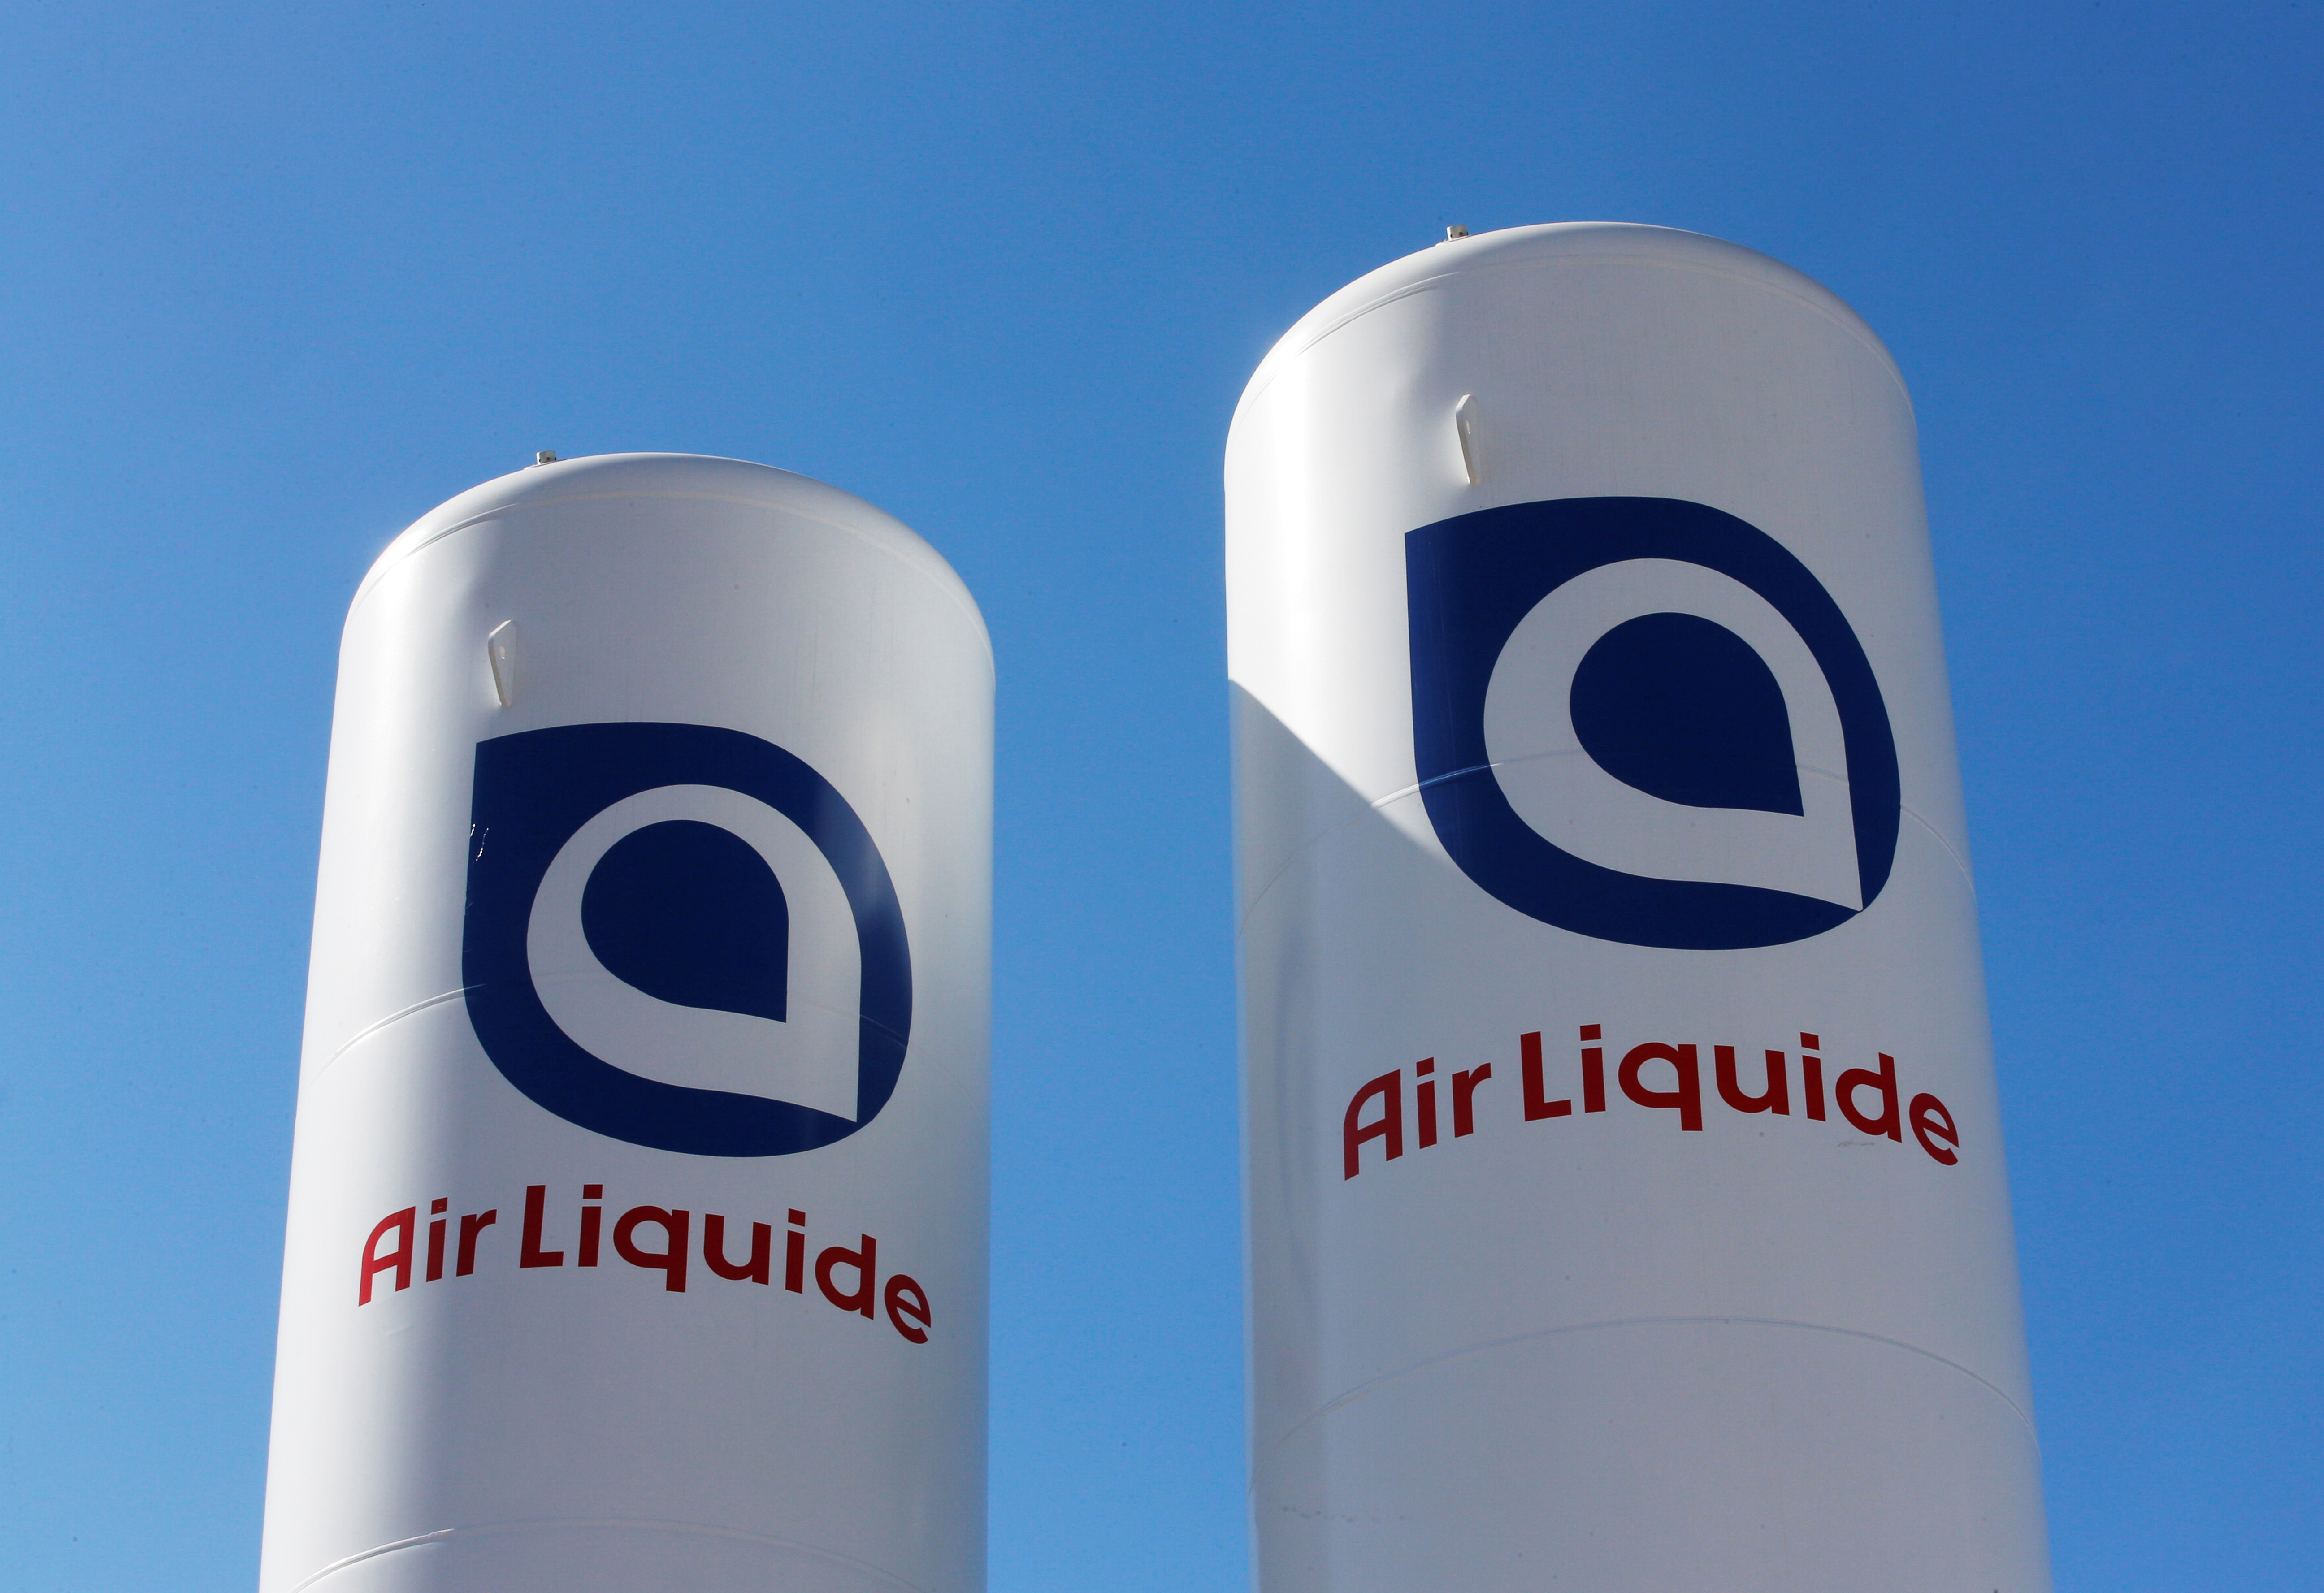 Hydrogène, captage du CO2…, Air Liquide veut surfer sur le marché de la décarbonation